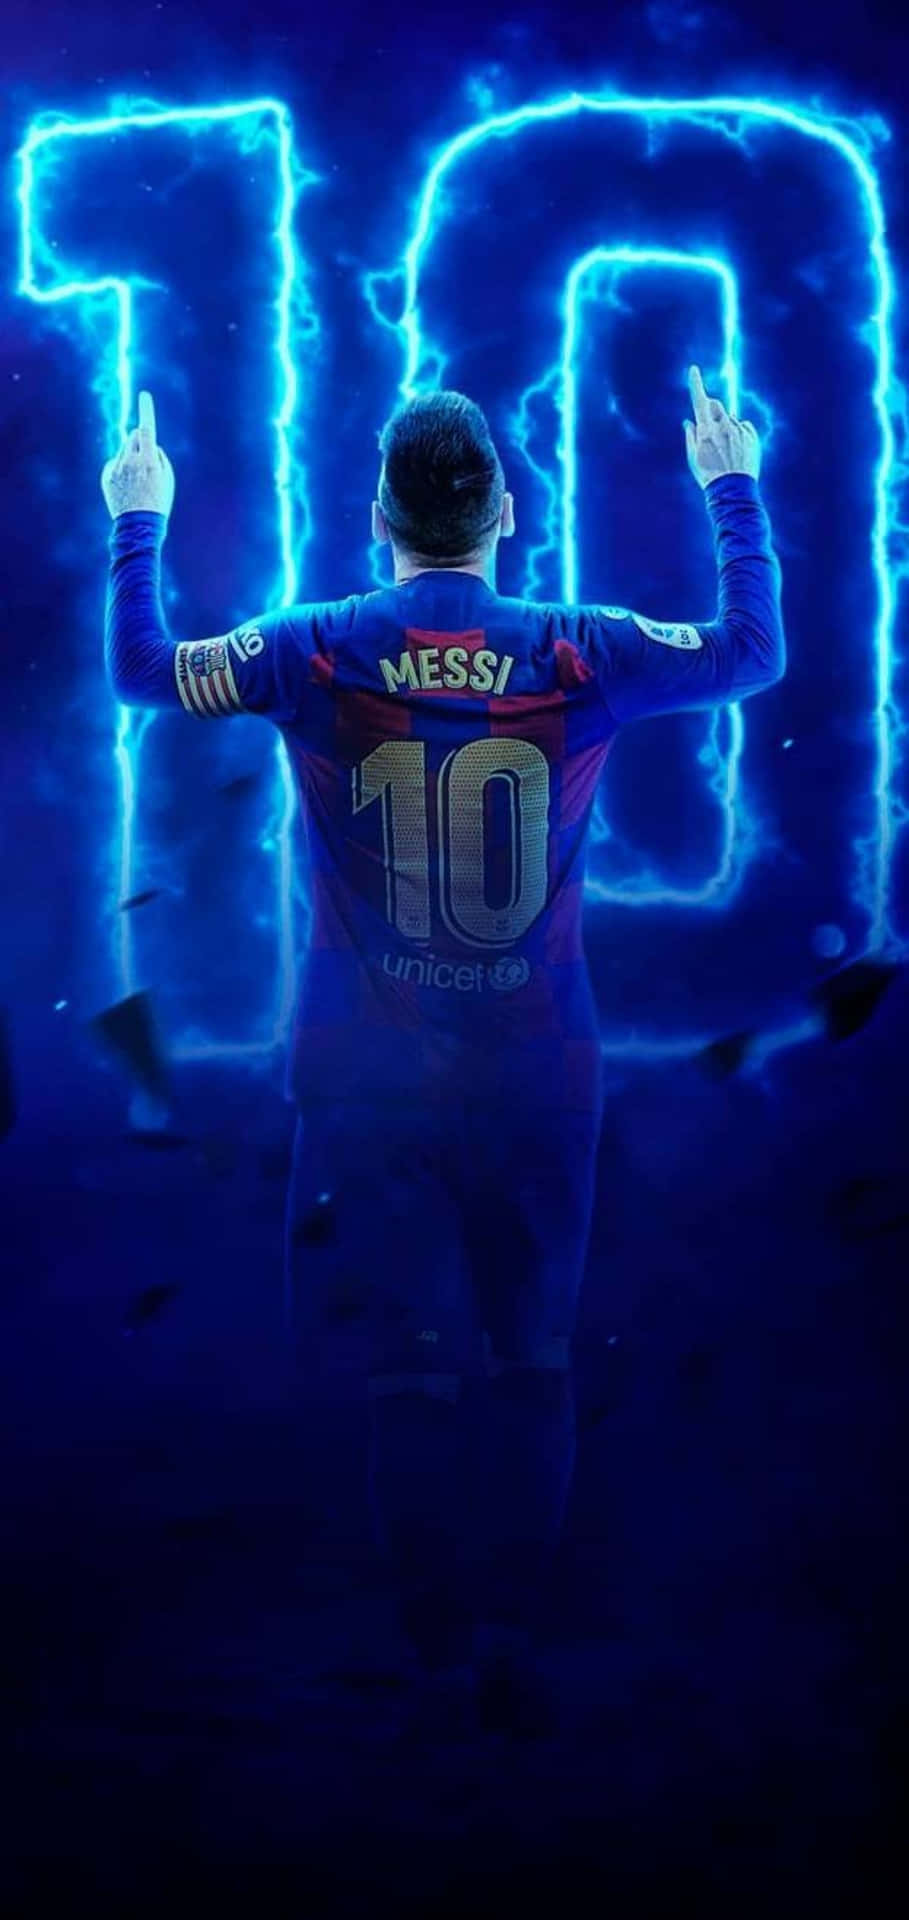 Hình nền Messi đẹp lung linh, bao gồm đủ các hình ảnh của siêu sao bóng đá này trên sân cỏ, trong đời thường và các màn khoe body nóng bỏng. Cùng tải ngay về để chào đón sự trở lại của anh chàng trong mùa giải mới nhé!